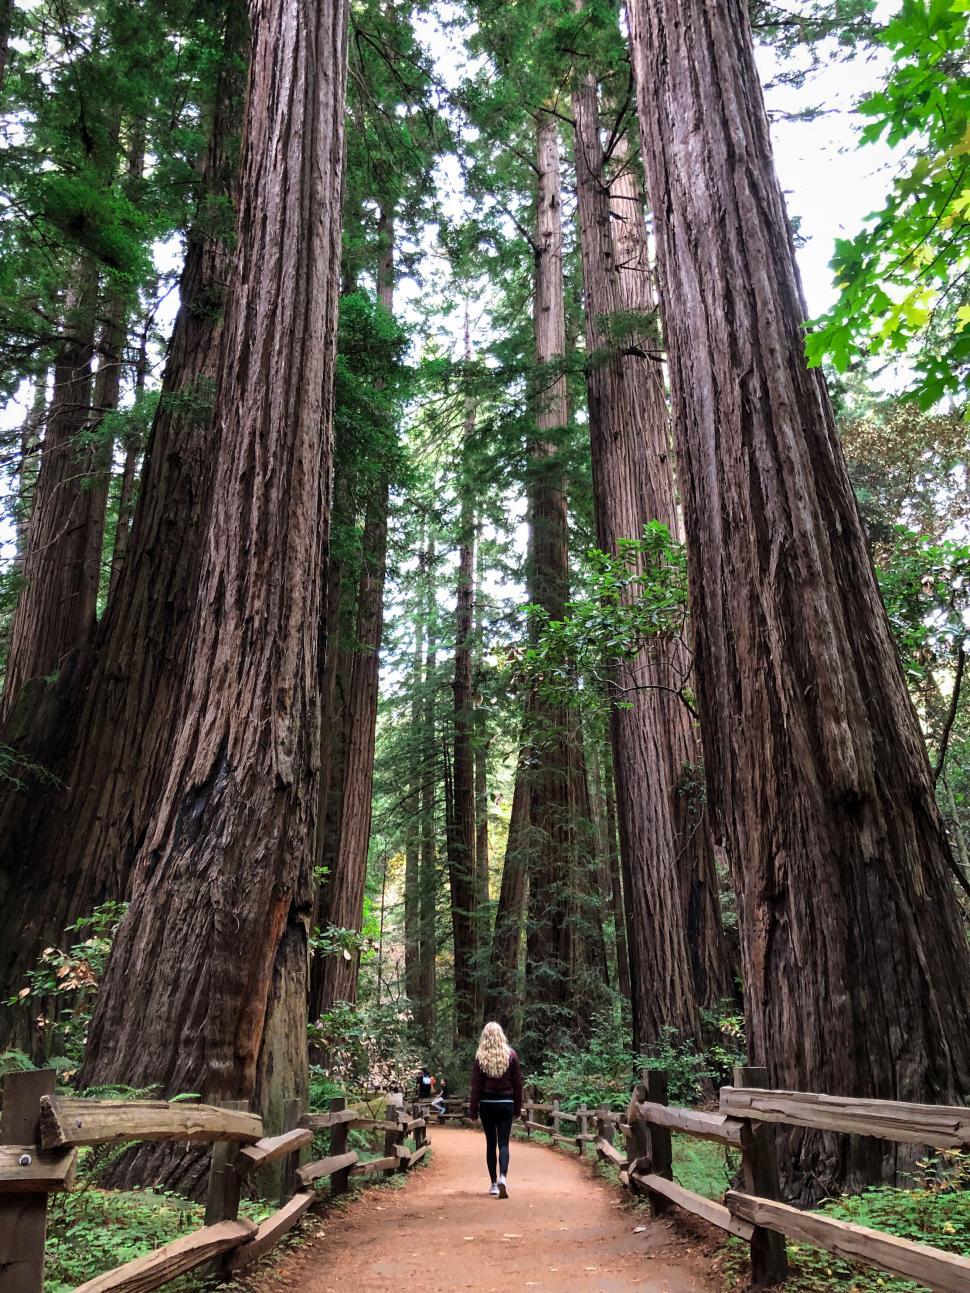 Free Image of Woman walking through giant redwood trees 